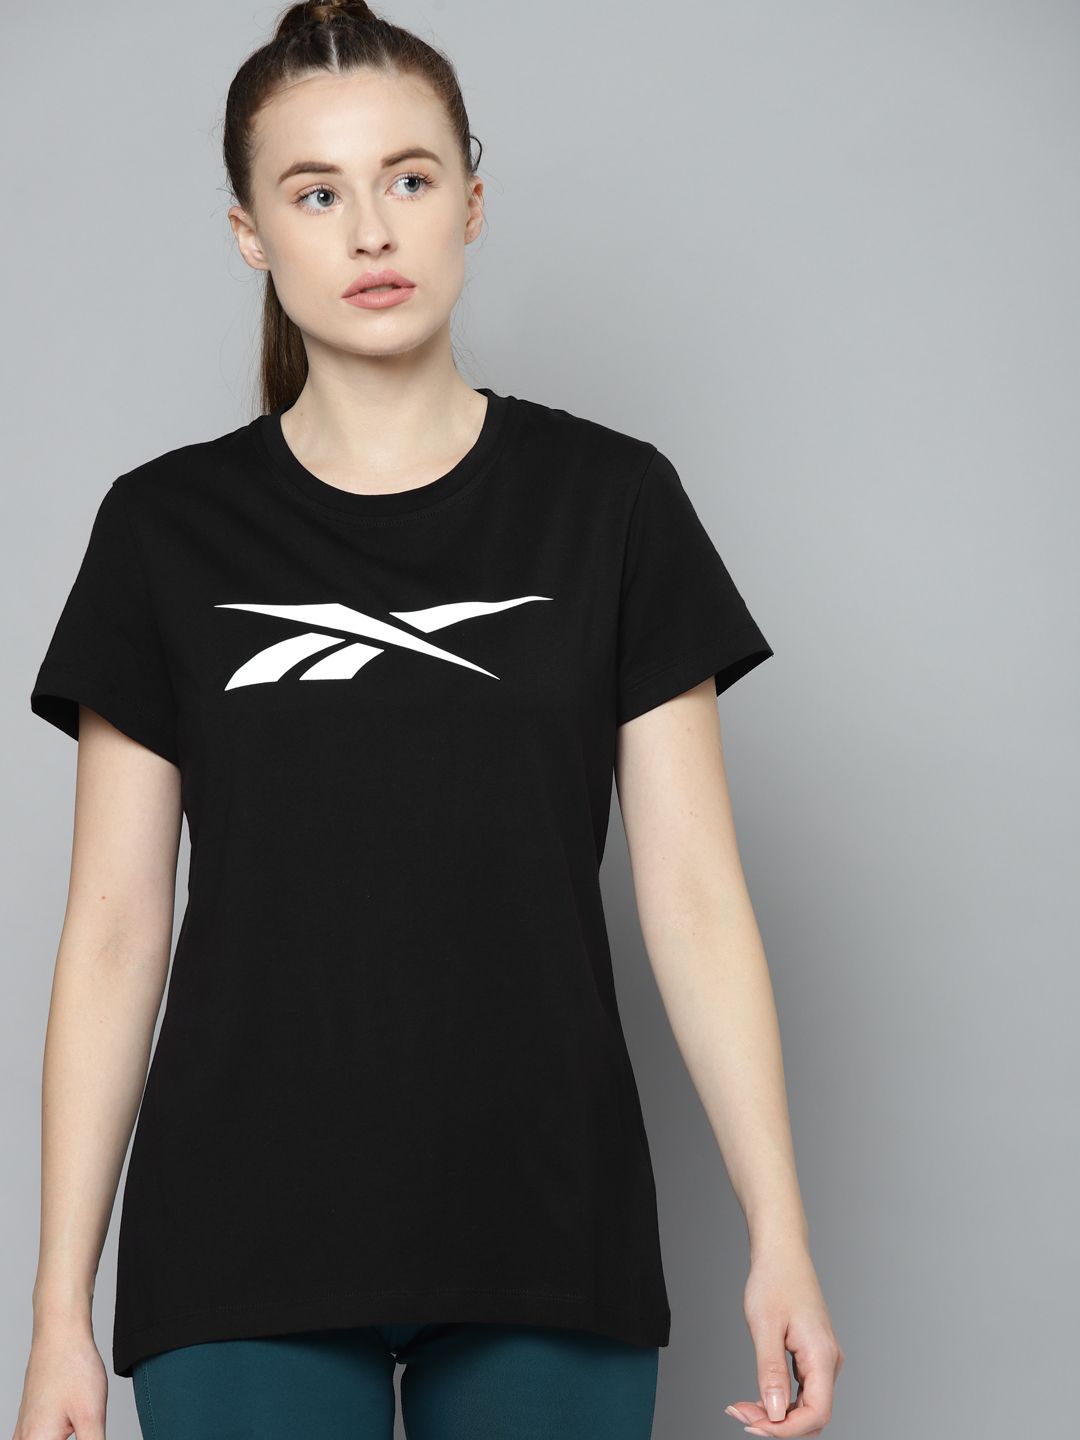 Reebok Women Black & White Brand Logo Printed Training or Gym T-shirt Price in India